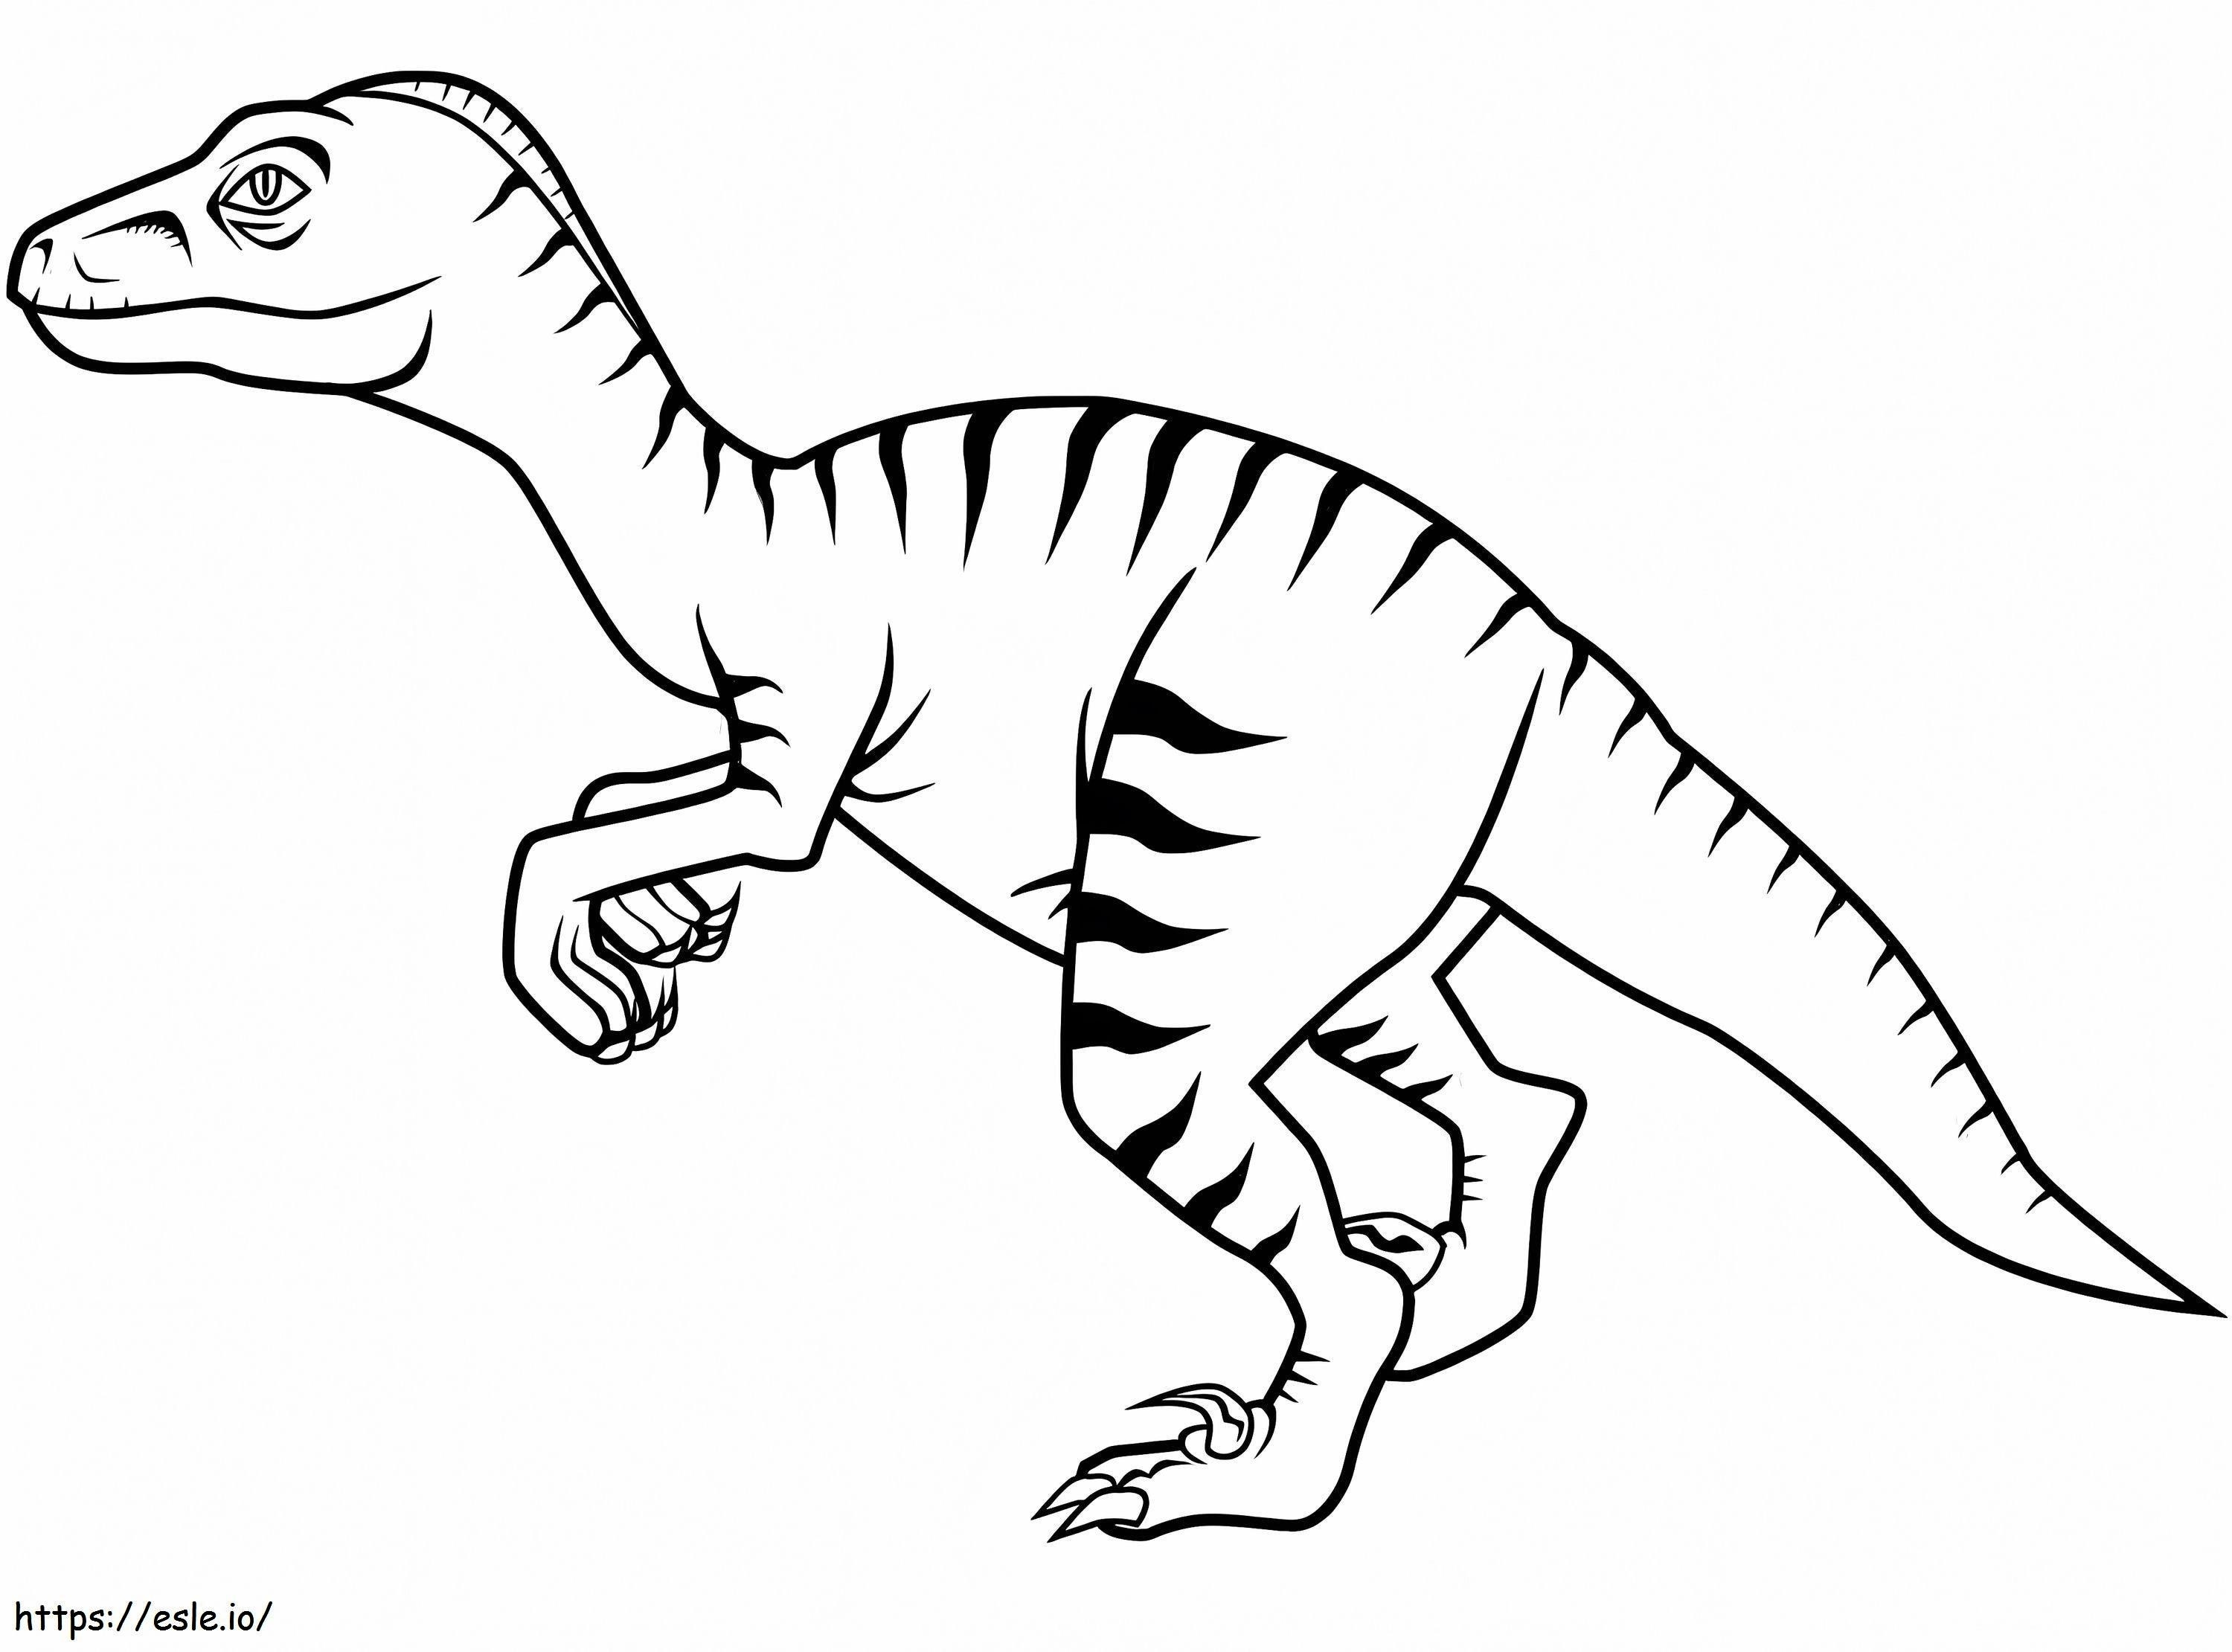 Coloriage Dinosaure Vélociraptor 4 à imprimer dessin